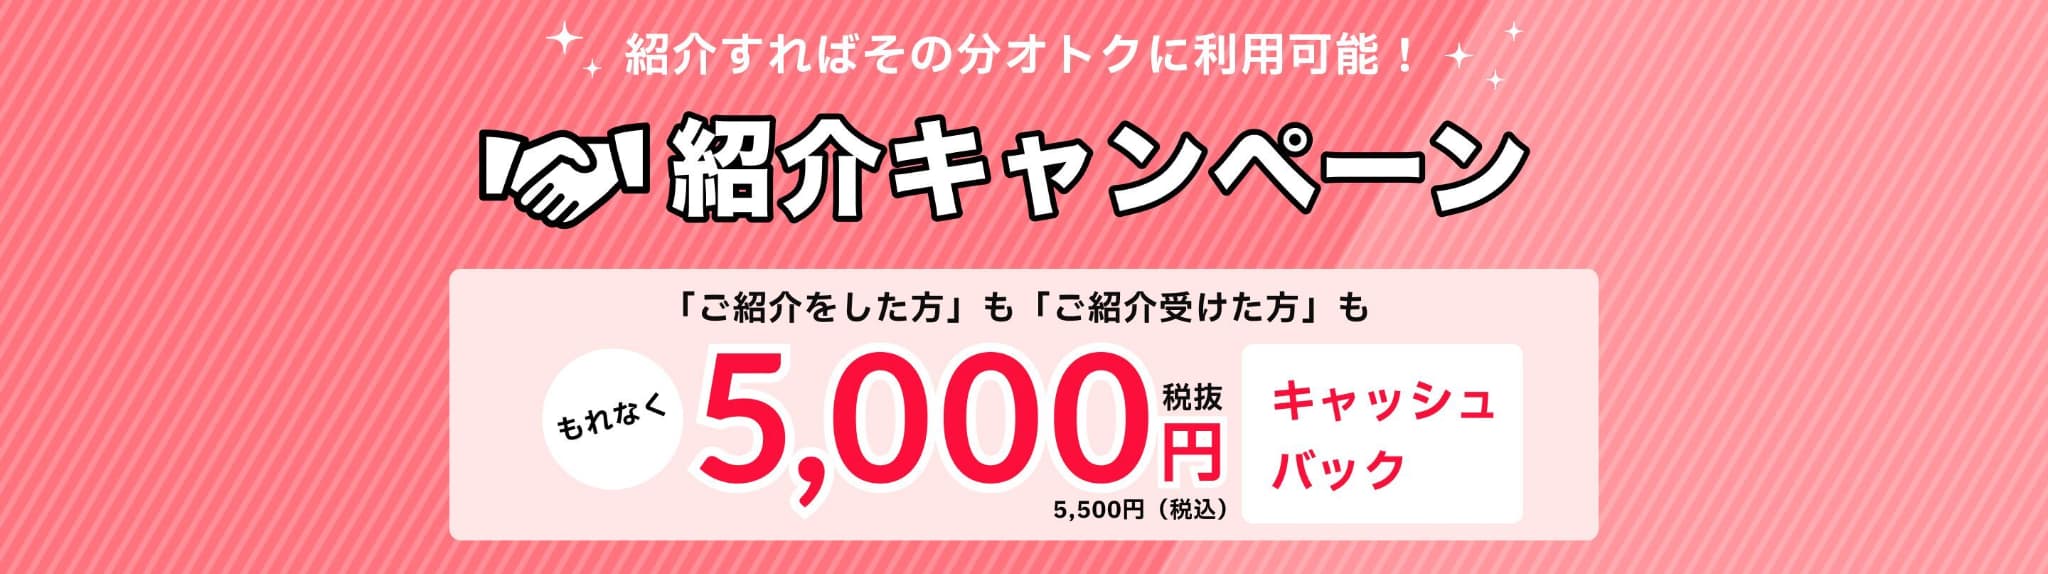 紹介キャンペーン 5,000円キャッシュバック